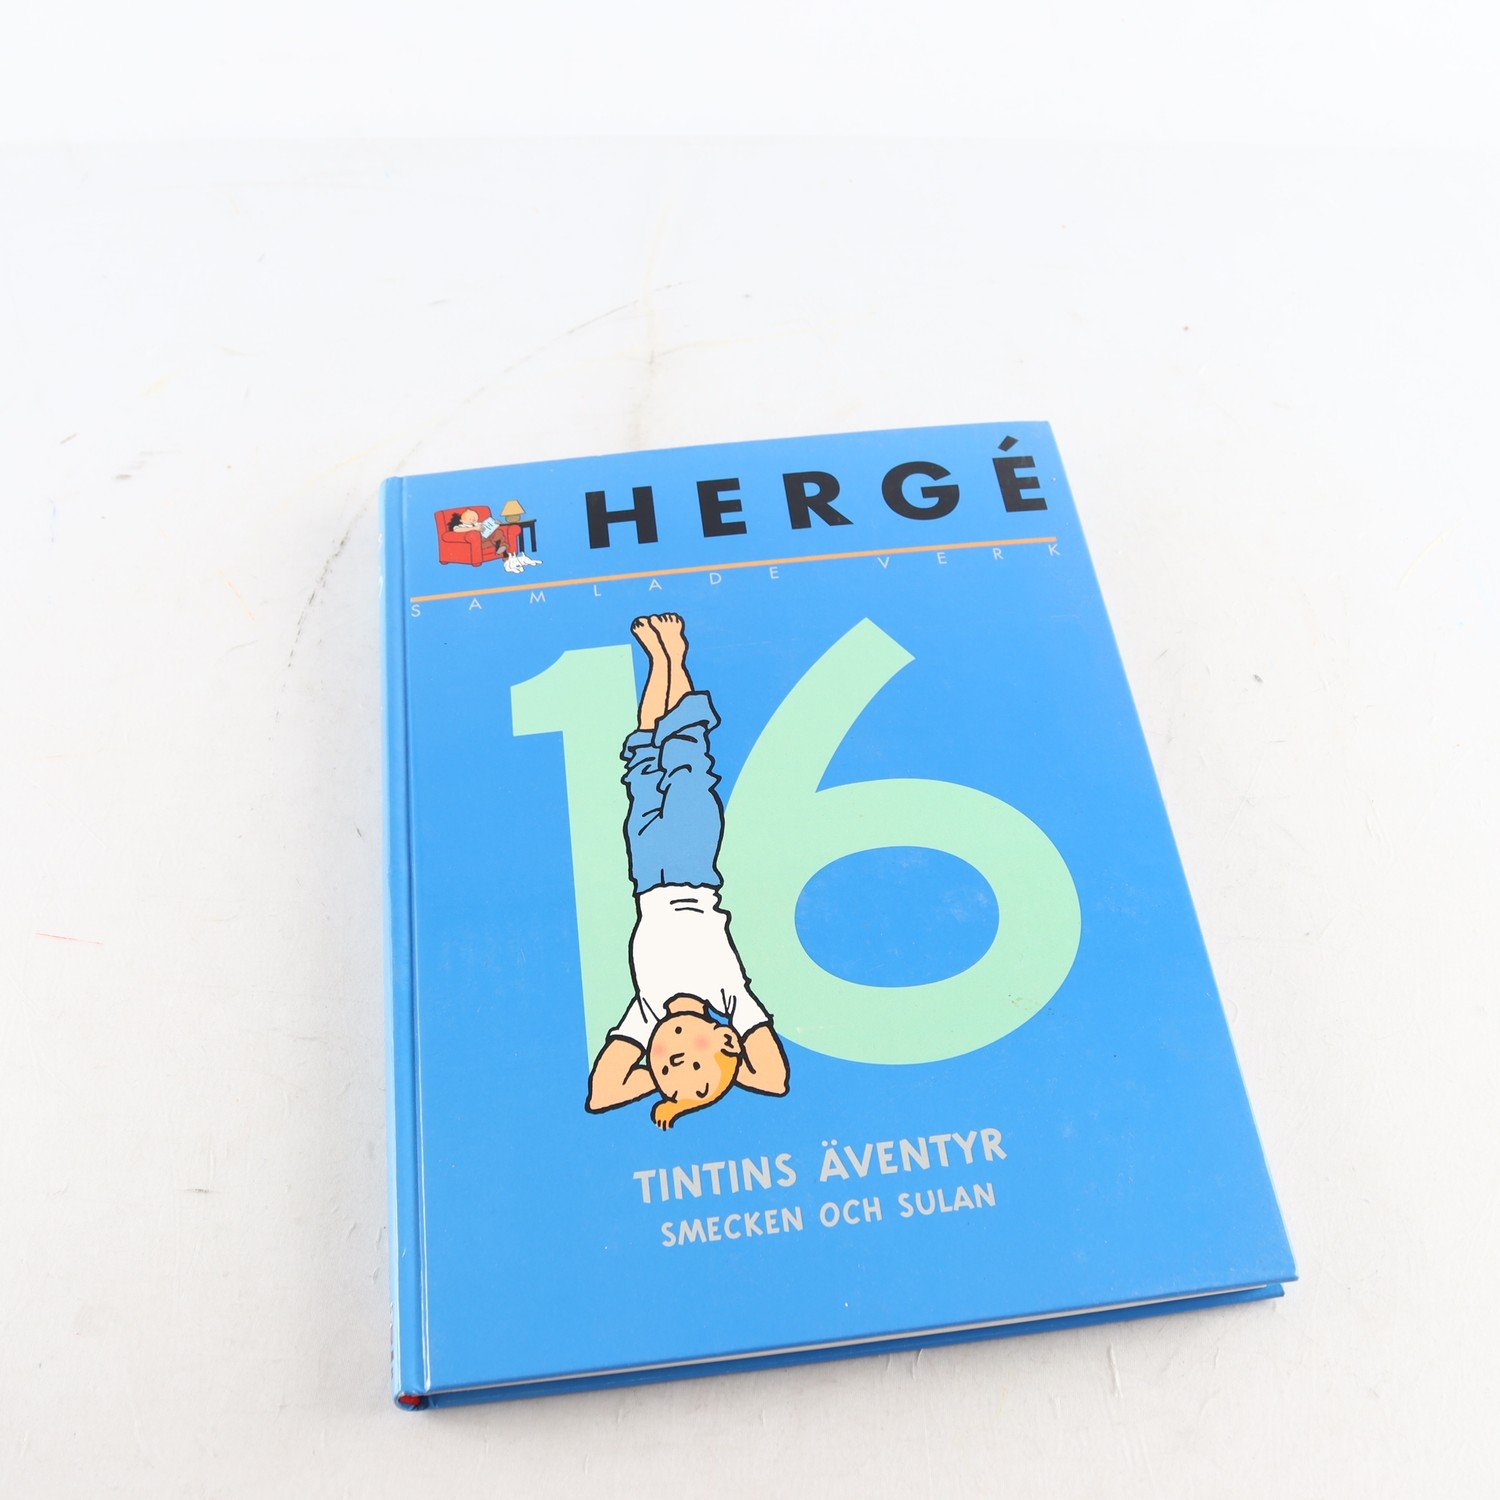 Hergé, Samlade verk, Vol. 16, Tintins äventyr, Smecken och Sulan